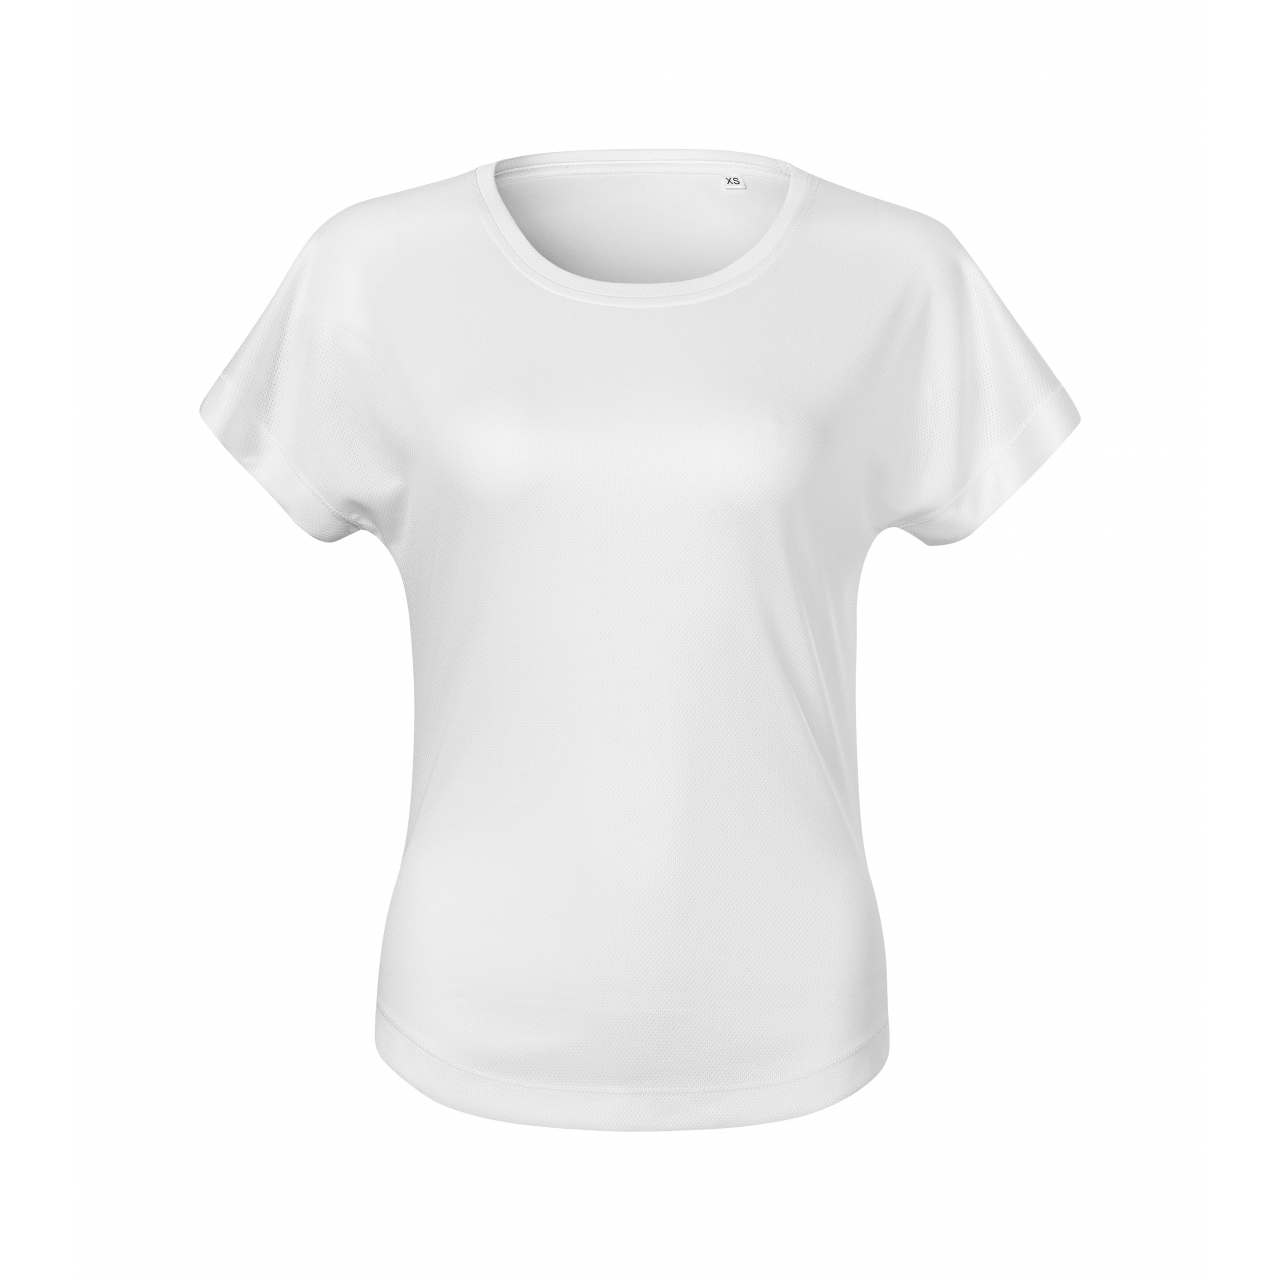 Tričko dámské Malfini Chance - bílé, L